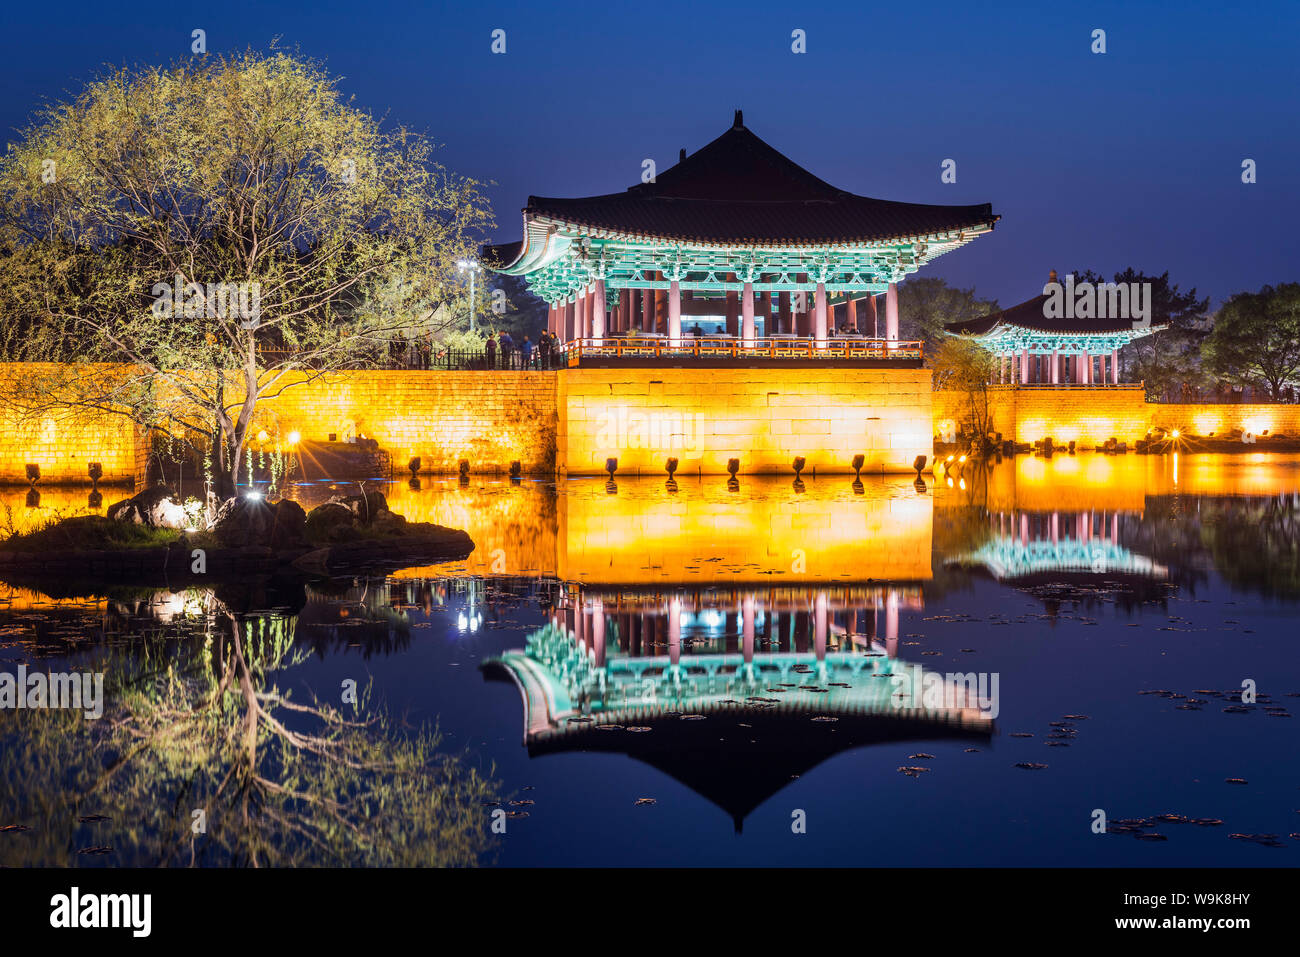 L'étang Anapji, Imhaejeon, site classé au Patrimoine Mondial de l'UNESCO, Geongju, Gyeongsangbuk-do, Corée du Sud, Asie Banque D'Images